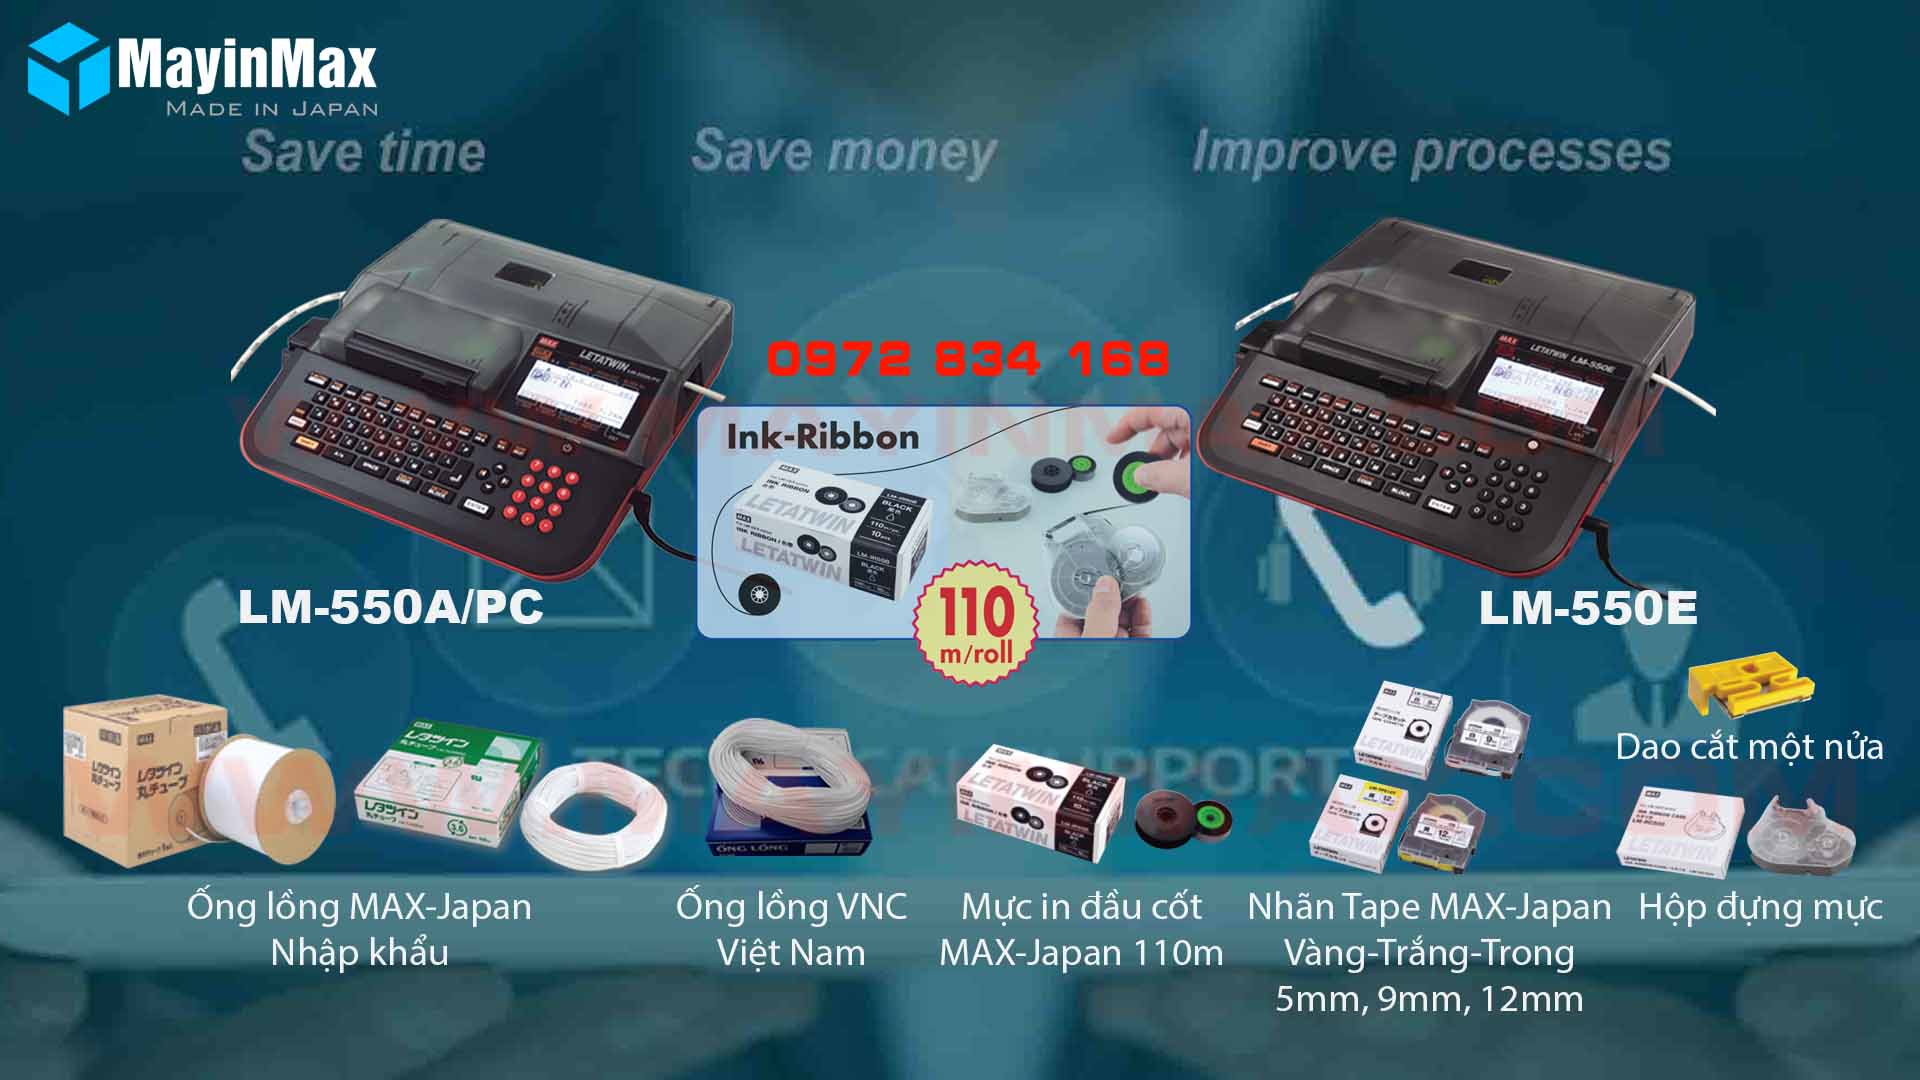 Hướng dẫn mua Máy in đầu cốt LM-550A/PC MAX-Japan